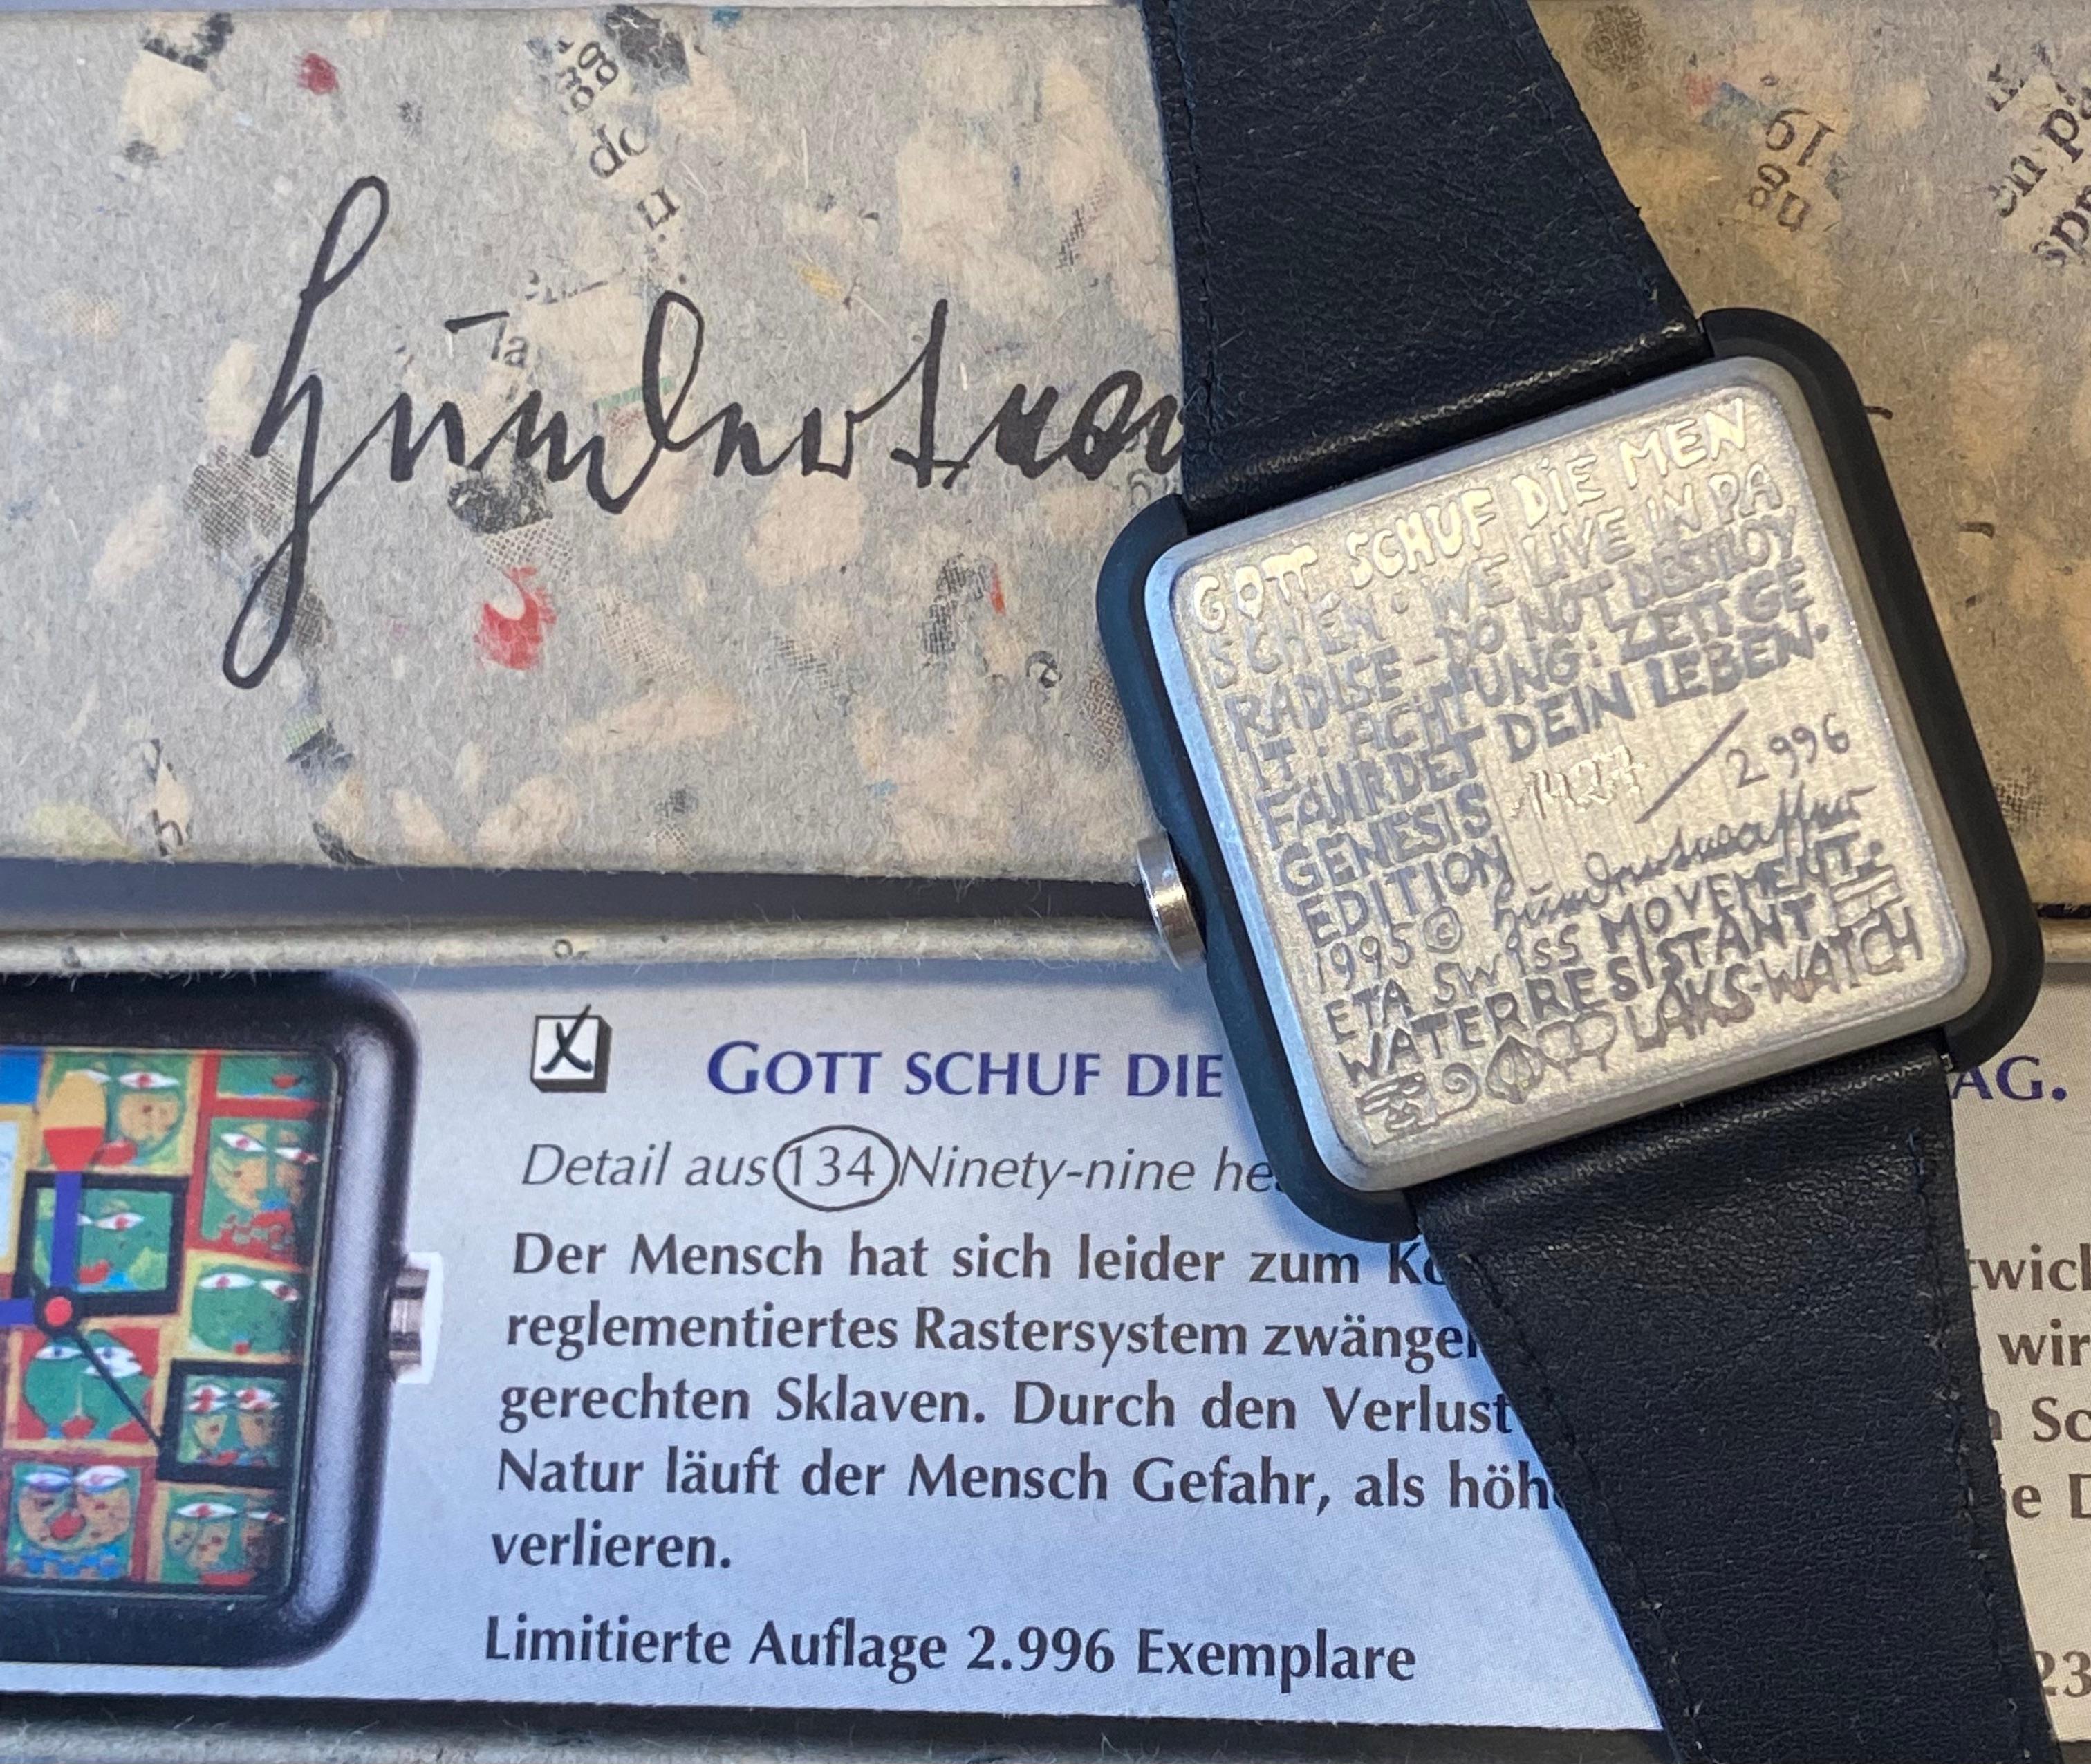 Montre conçue par l'artiste autrichien Hundertwasser.
Montre rare, neuve de stock.
Vendu avec boîte et certificat.
Circa : 1995
Diamètre : 4 cm
Longueur de la sangle : 24 cm.